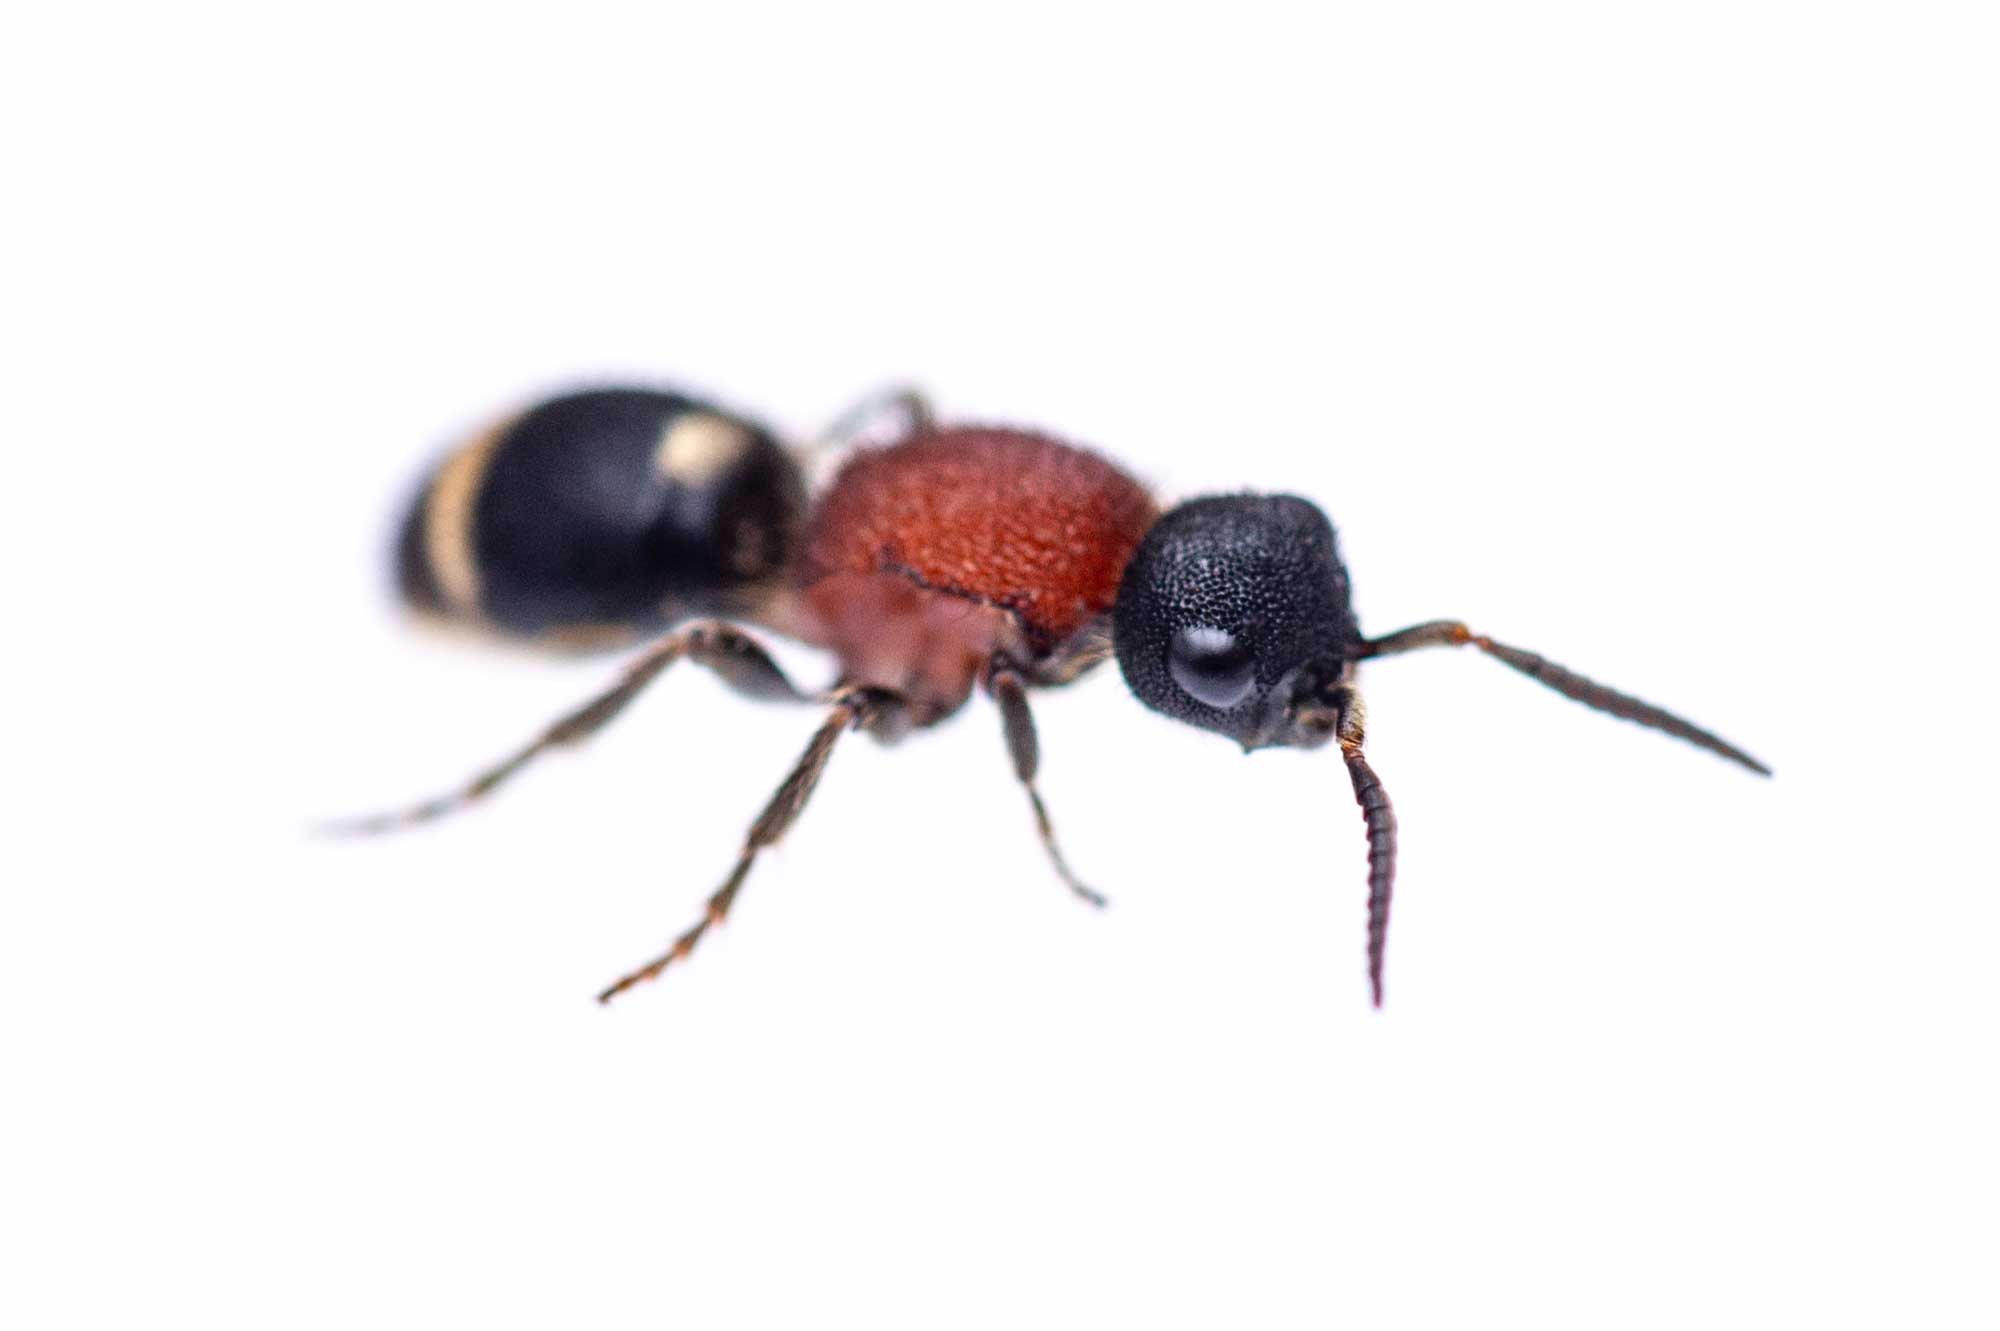 ムネアカアリバチは蟻に似た蜂 可愛い特徴を写真で紹介 虫の写真と生態なら昆虫写真図鑑 ムシミル